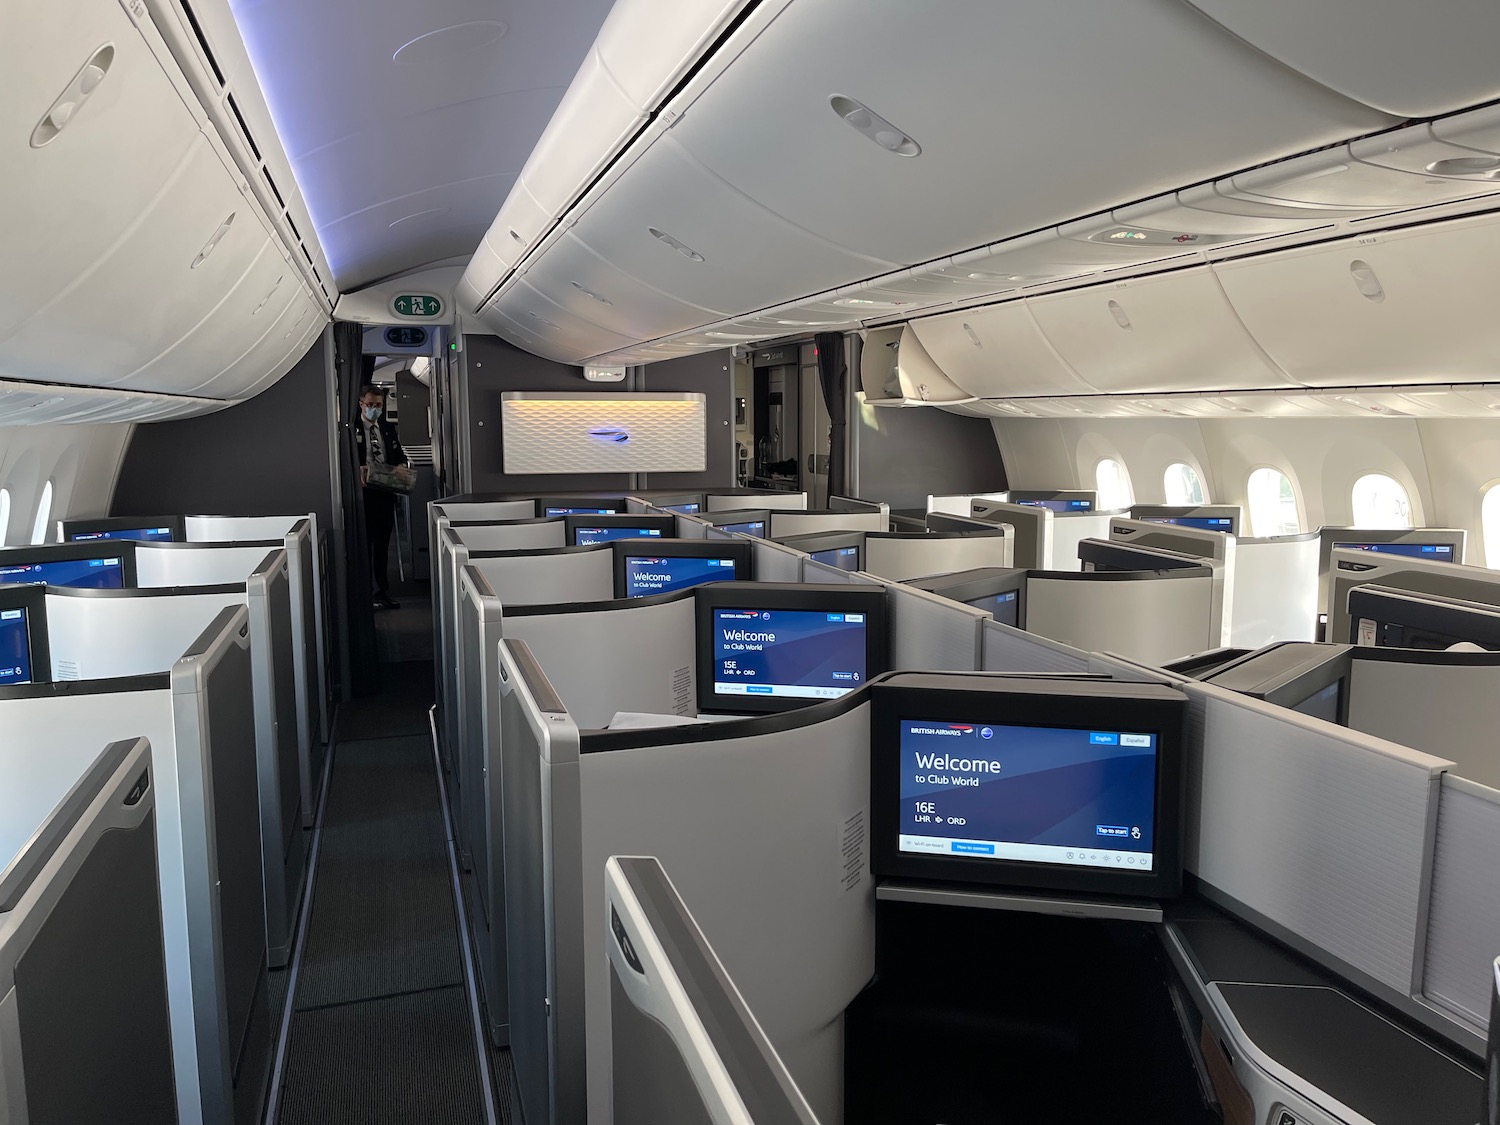 British Airways 787 10 Club World Suites 4 - Travel News, Insights & Resources.